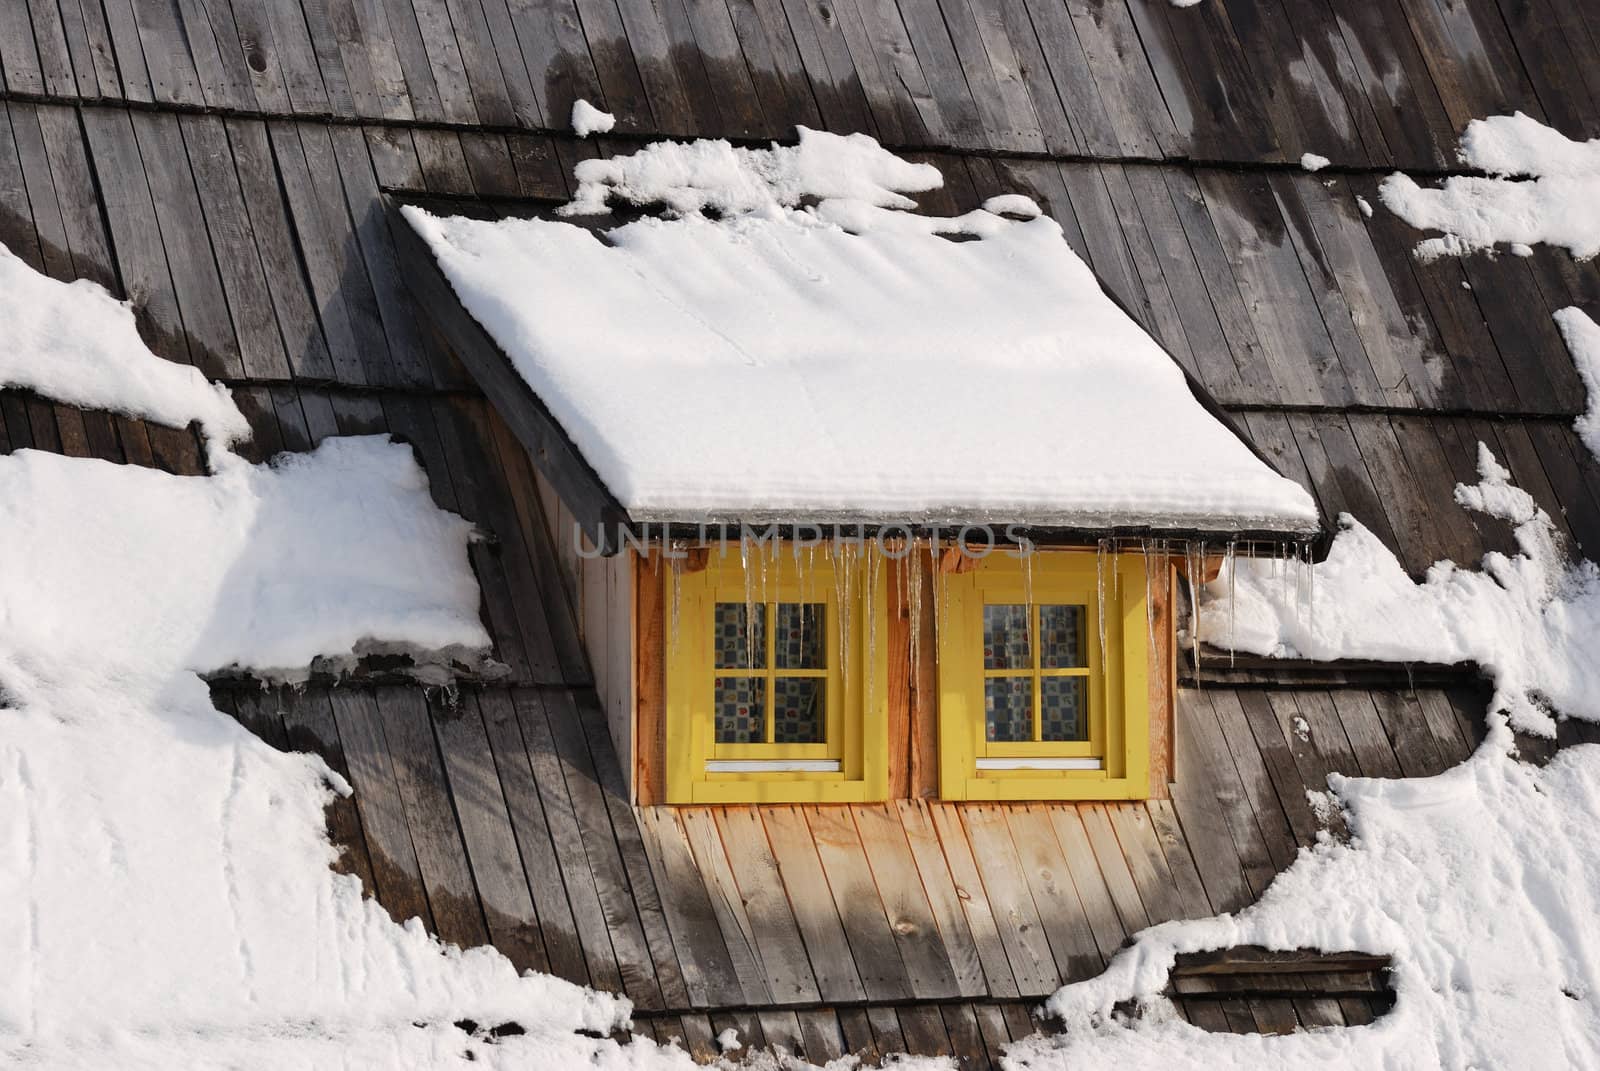 Window on old Serbian wooden house in winter.